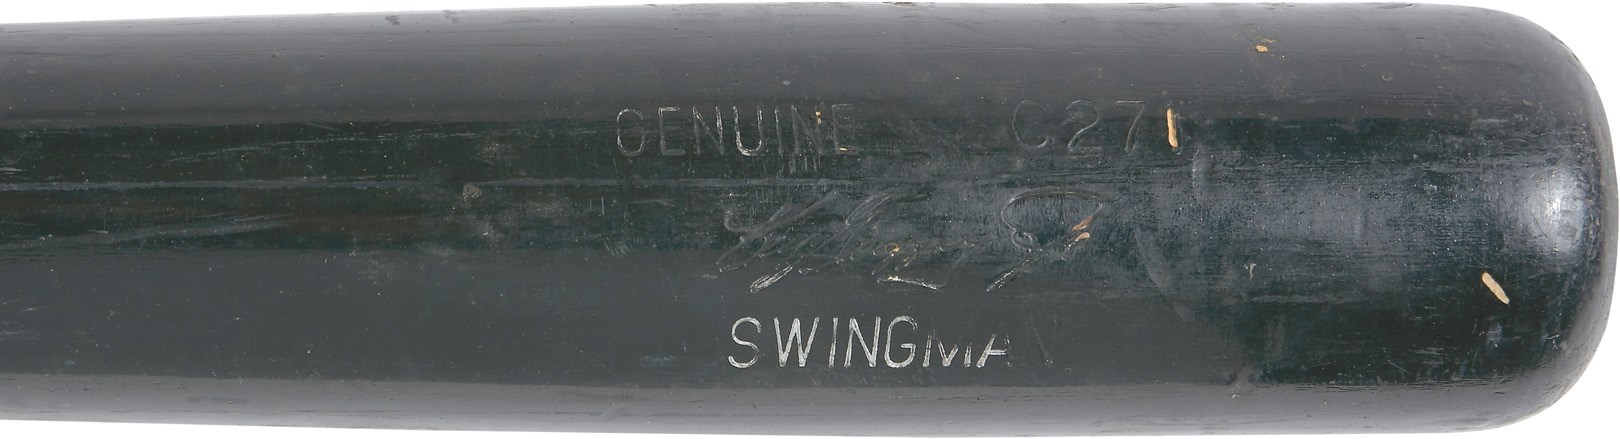 - 2001-07 Ken Griffey Jr. Game Used "Swingman" Reds Bat (PSA GU 10)